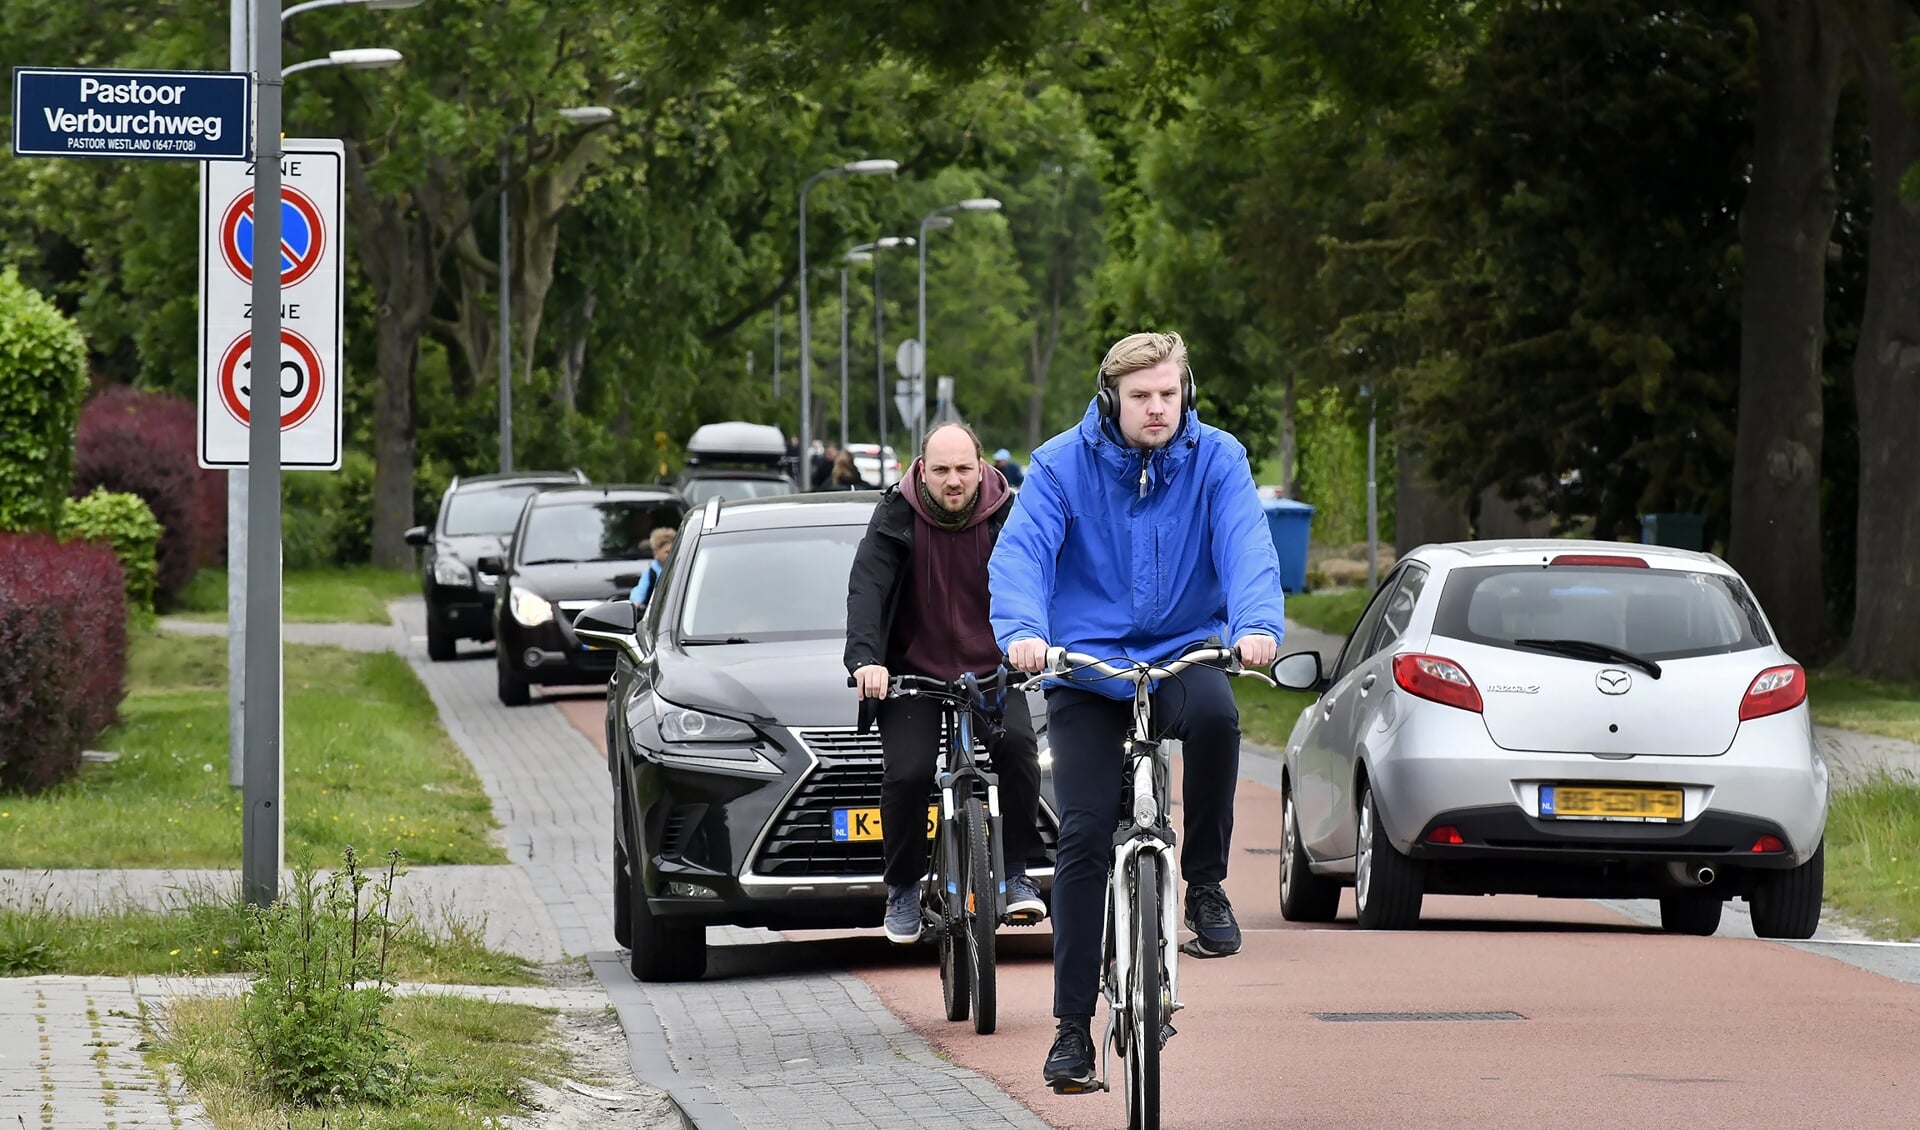 Er rijden meer auto's dan fietsers over de fietsstraat. Moet de weg compleet autoluw worden, of is een dure verkeersknip de oplossing?